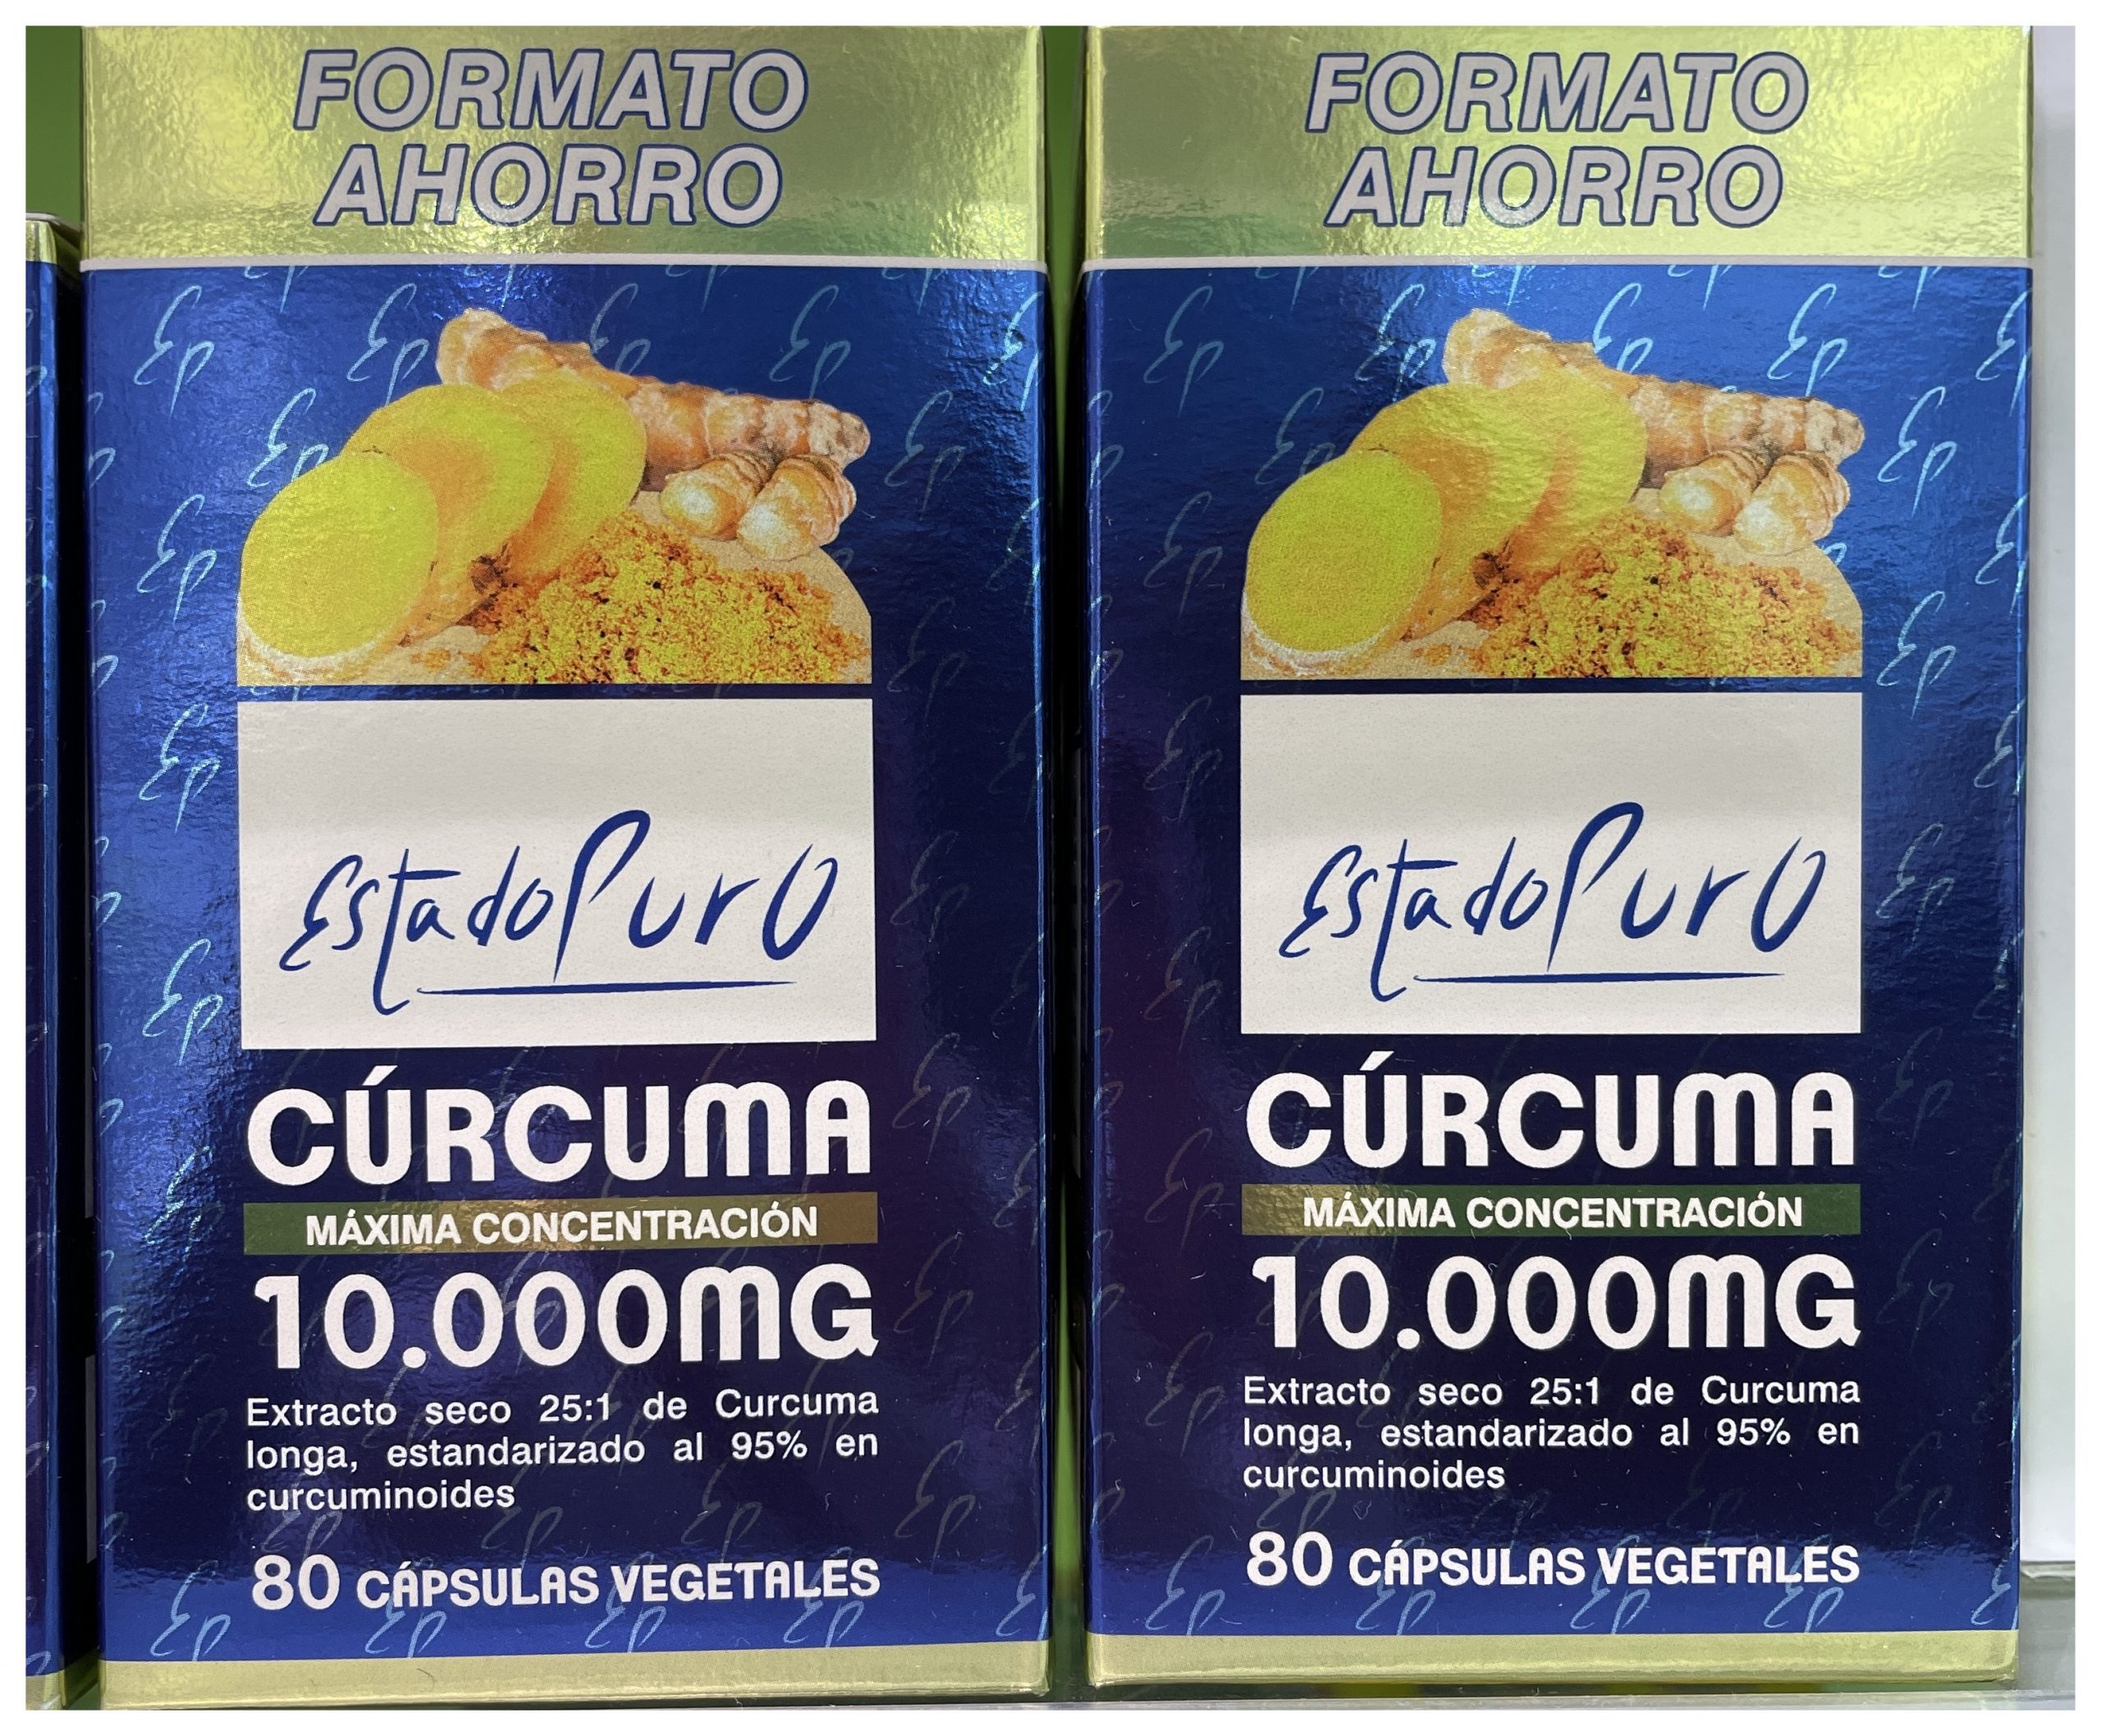 Cúrcuma 10.000 Mg de Estado Puro es un complemento alimenticio con extracto seco de rizoma de cúrcuma procedente de la especie Cúrcuma longa, originaria de la India